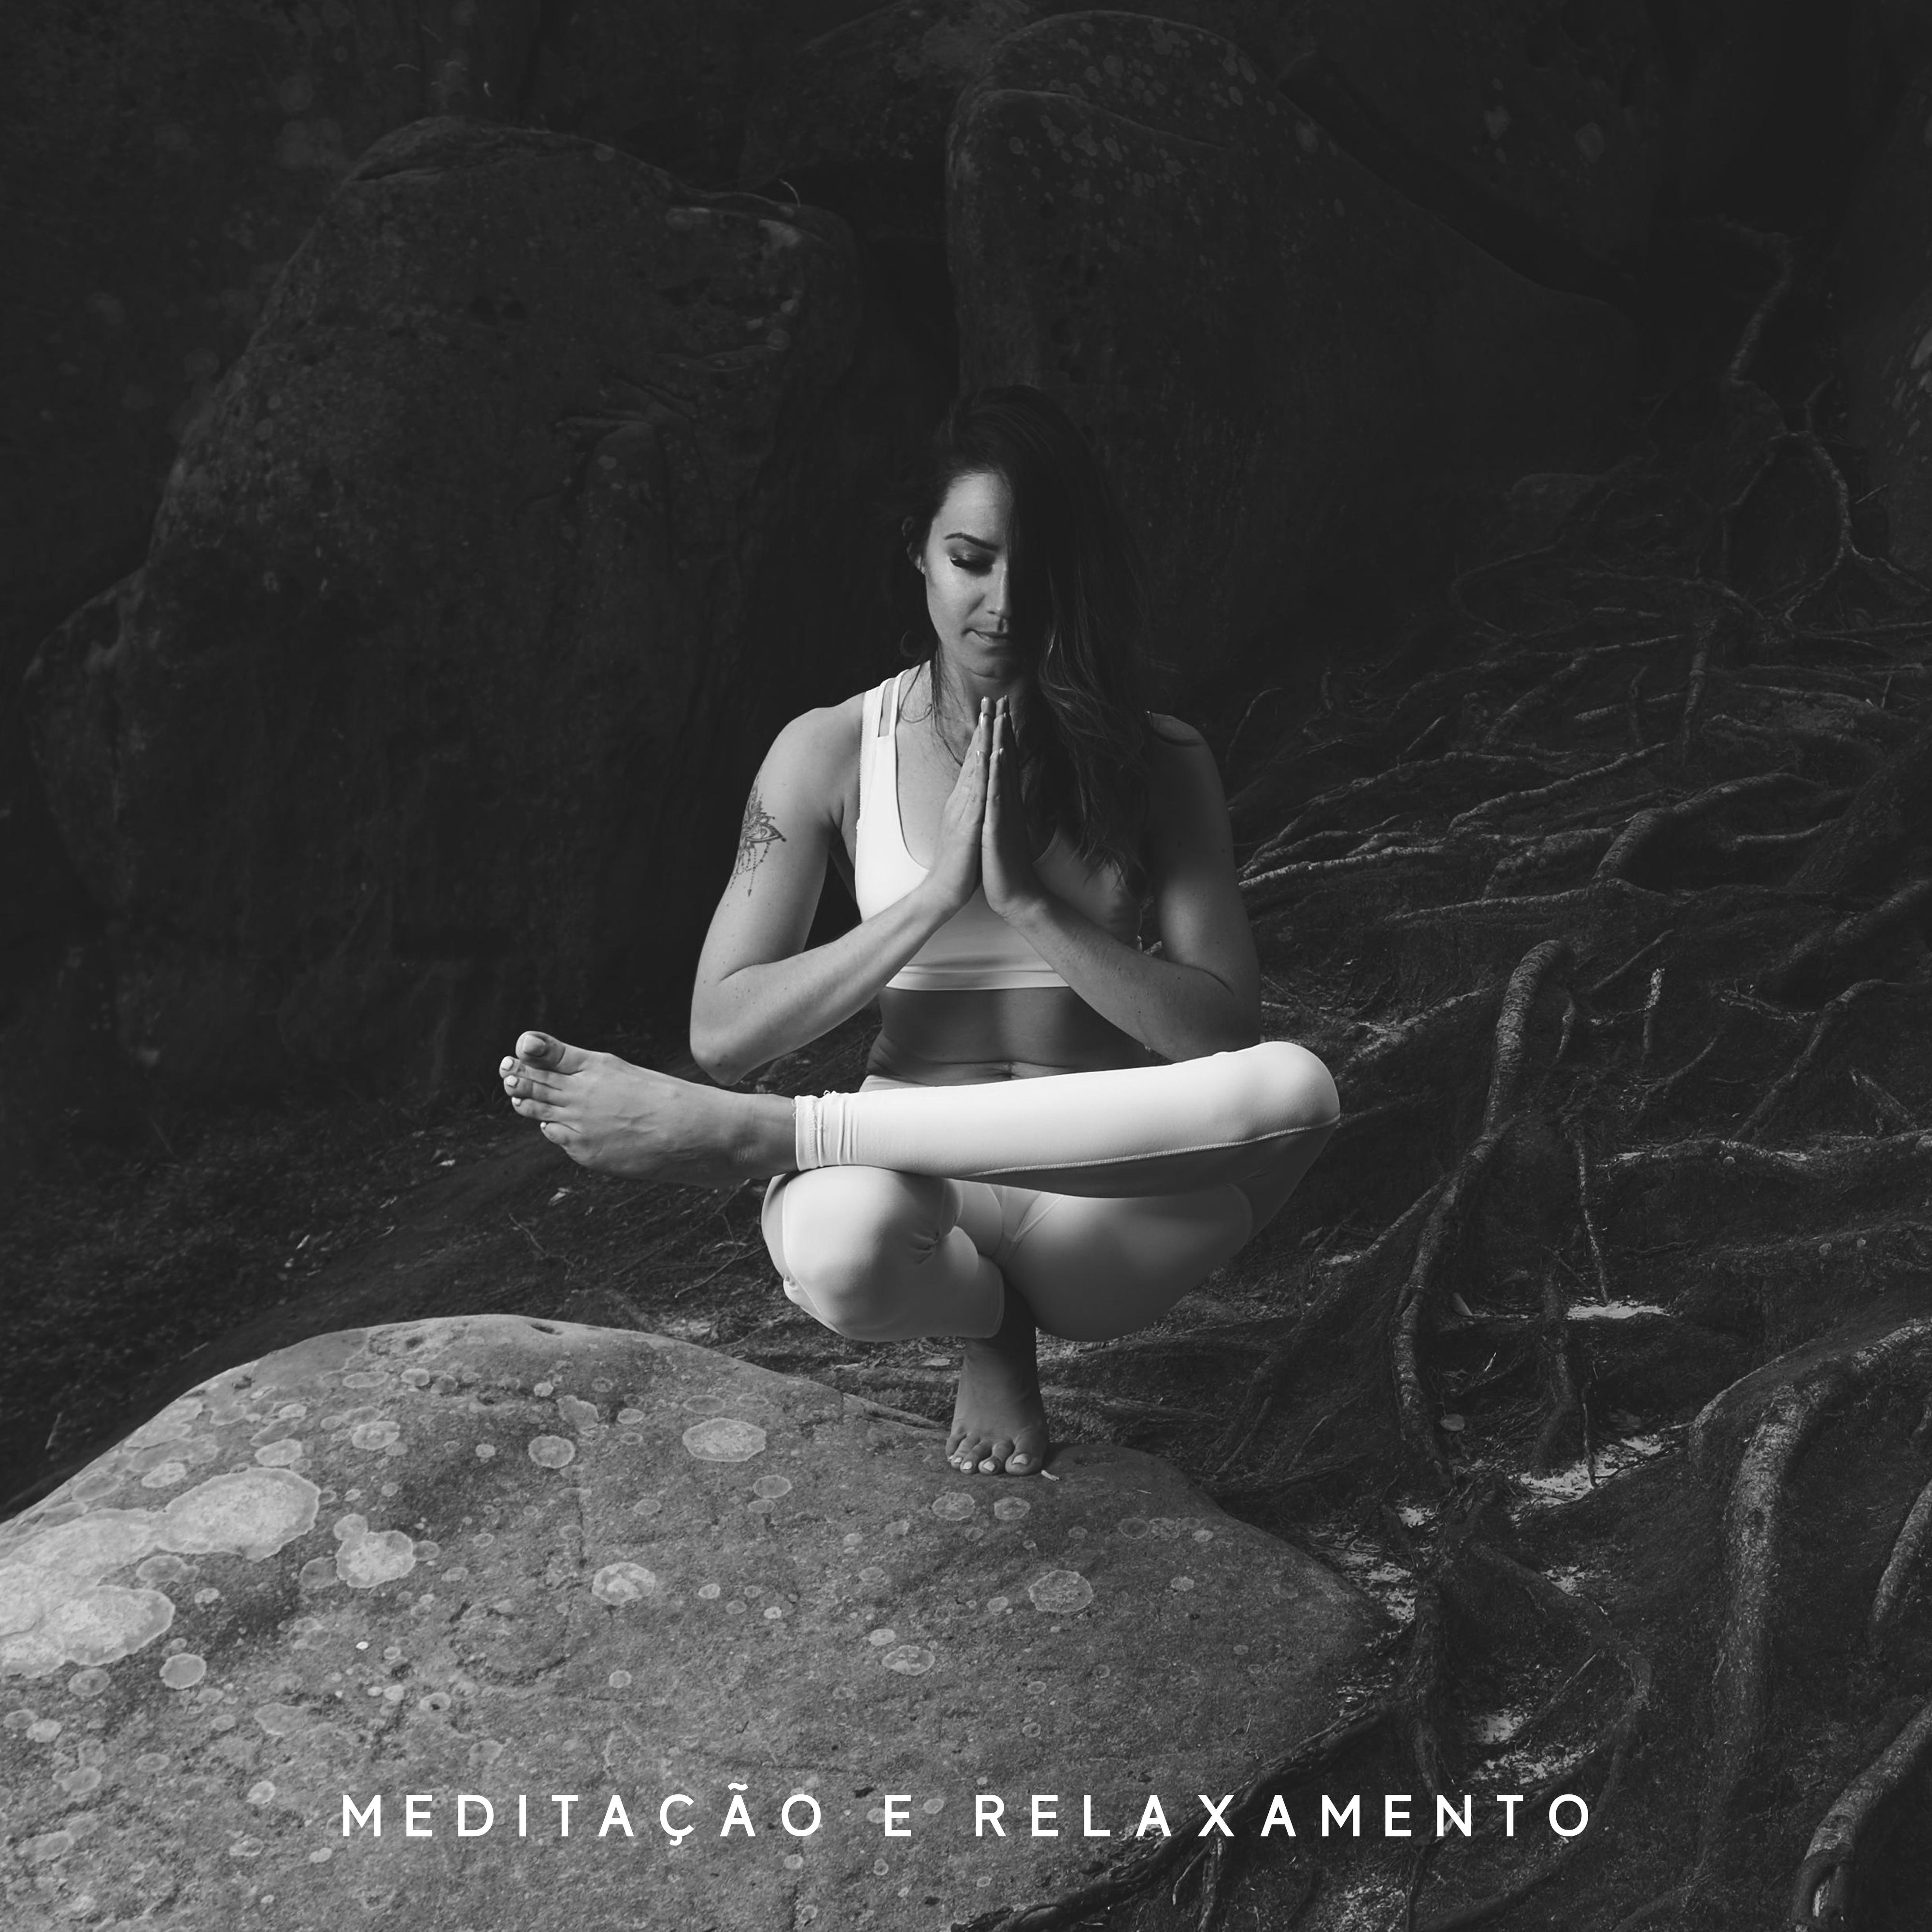 Meditação e Relaxamento – Música para Meditação Profunda, Calma, Harmonia, Relaxamento, Música Zen